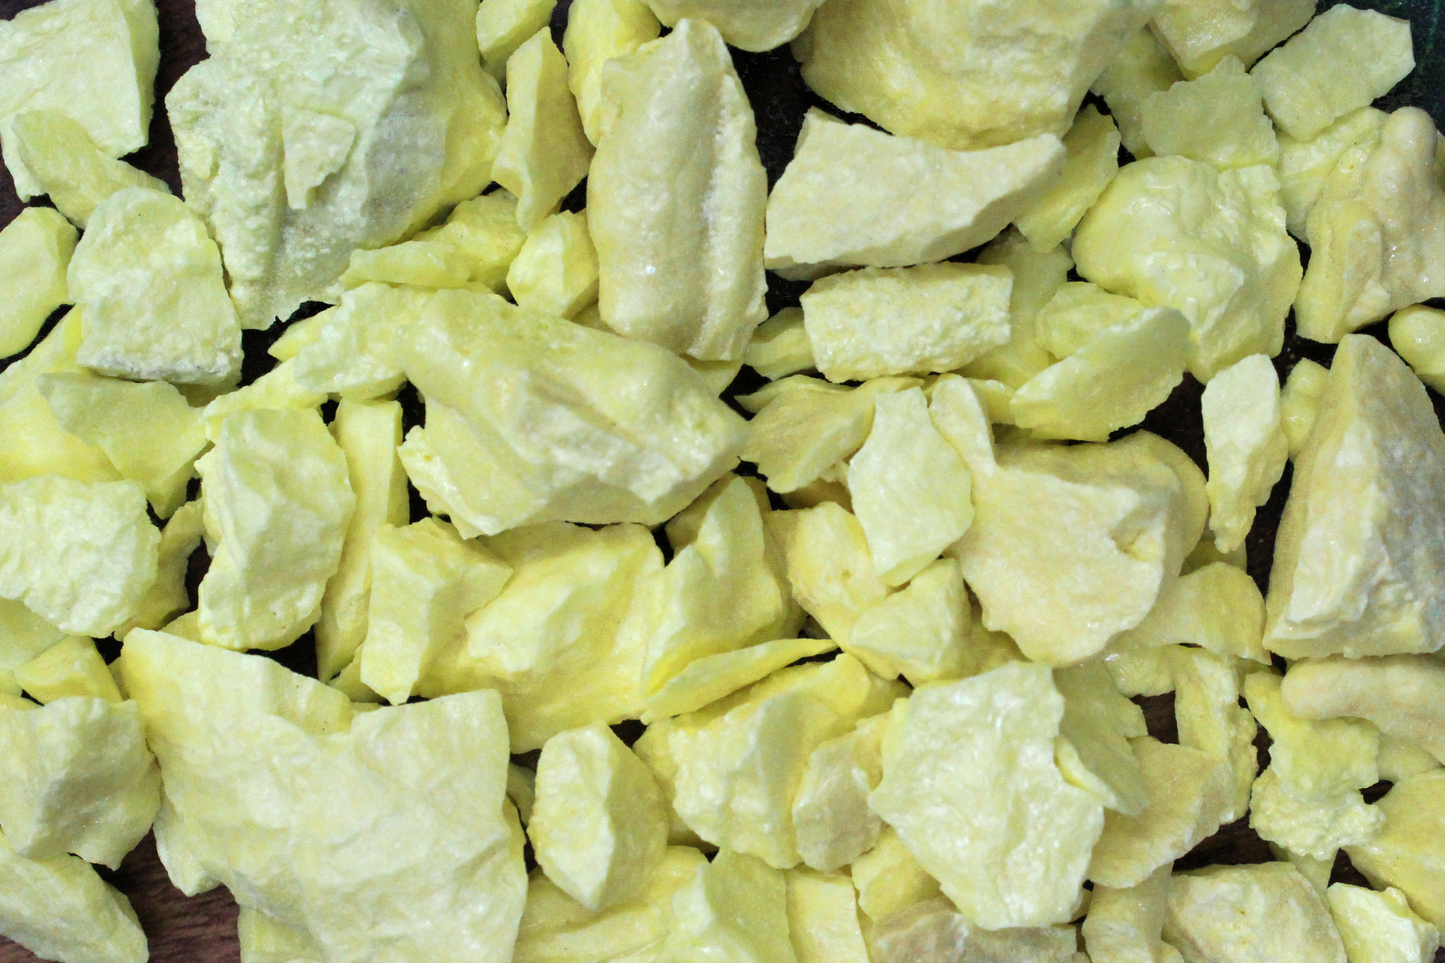 Sulphur Chips - 0.5 oz Bag